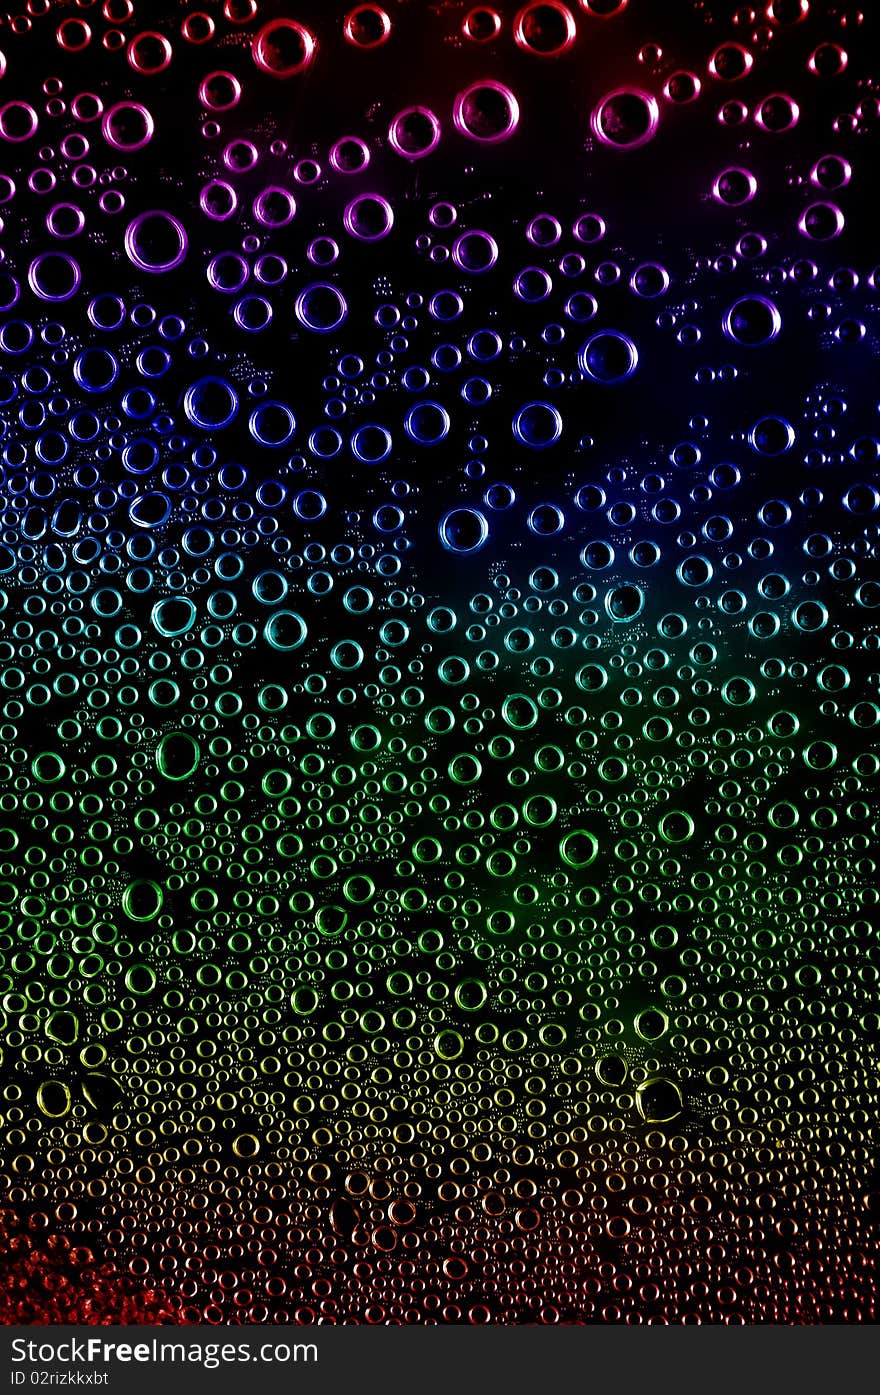 Macro closeup of condensation water bubbles